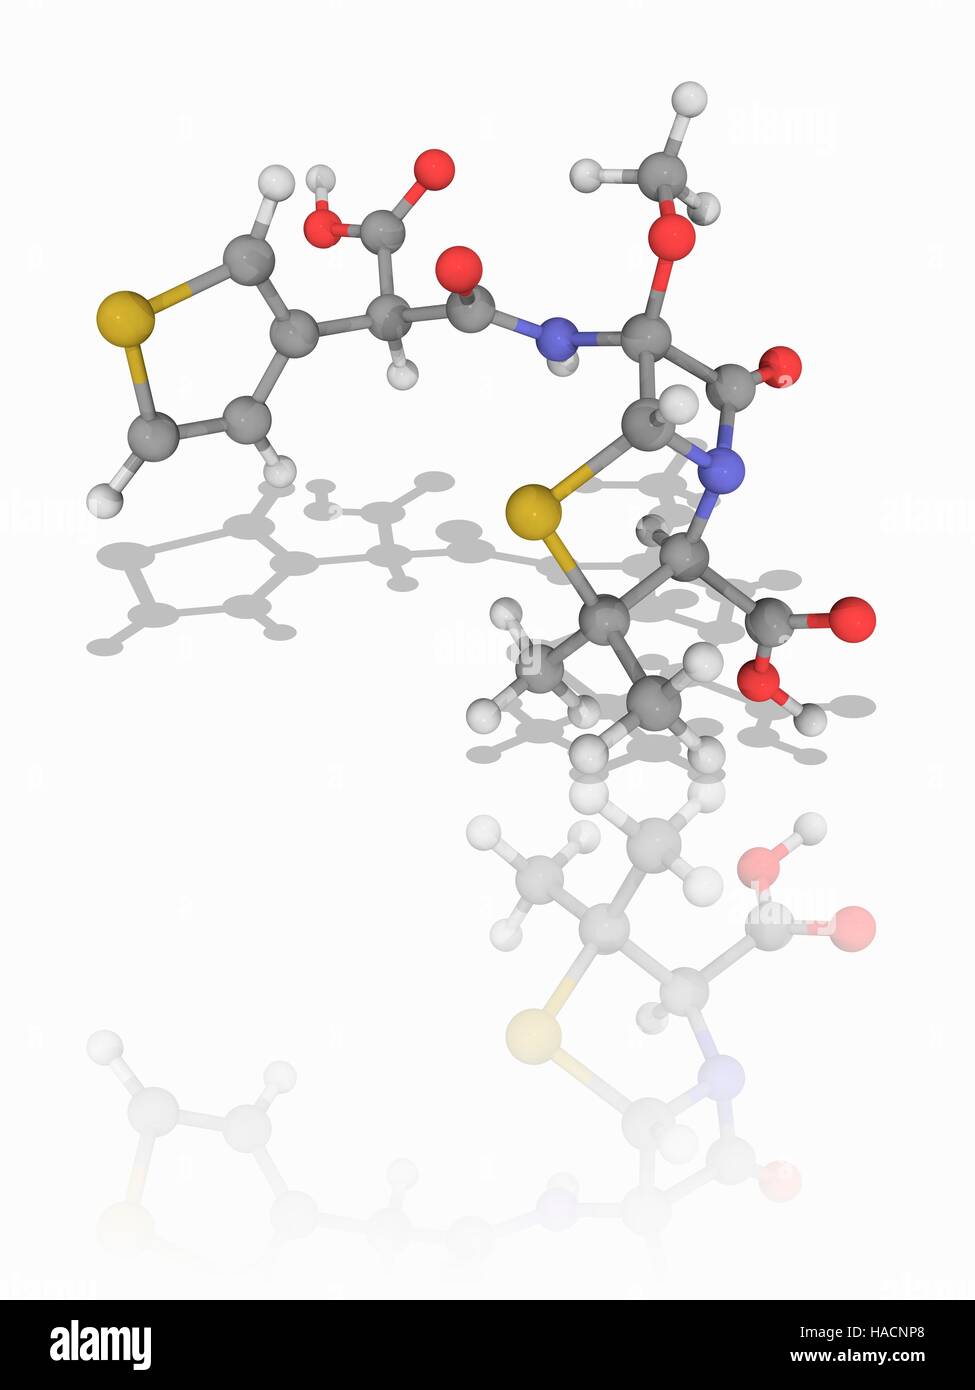 Temocillin. Il modello molecolare del farmaco temocillin (C16.H18.N2.O7.S2), una beta-lattamasi-penicillina resistente usato per trattare multiresistenti infezioni batteriche gram-negative. Gli atomi sono rappresentati da sfere e sono codificati a colori: carbonio (grigio), Idrogeno (bianco), Azoto (blu), Ossigeno (rosso) e zolfo (giallo). Illustrazione. Foto Stock